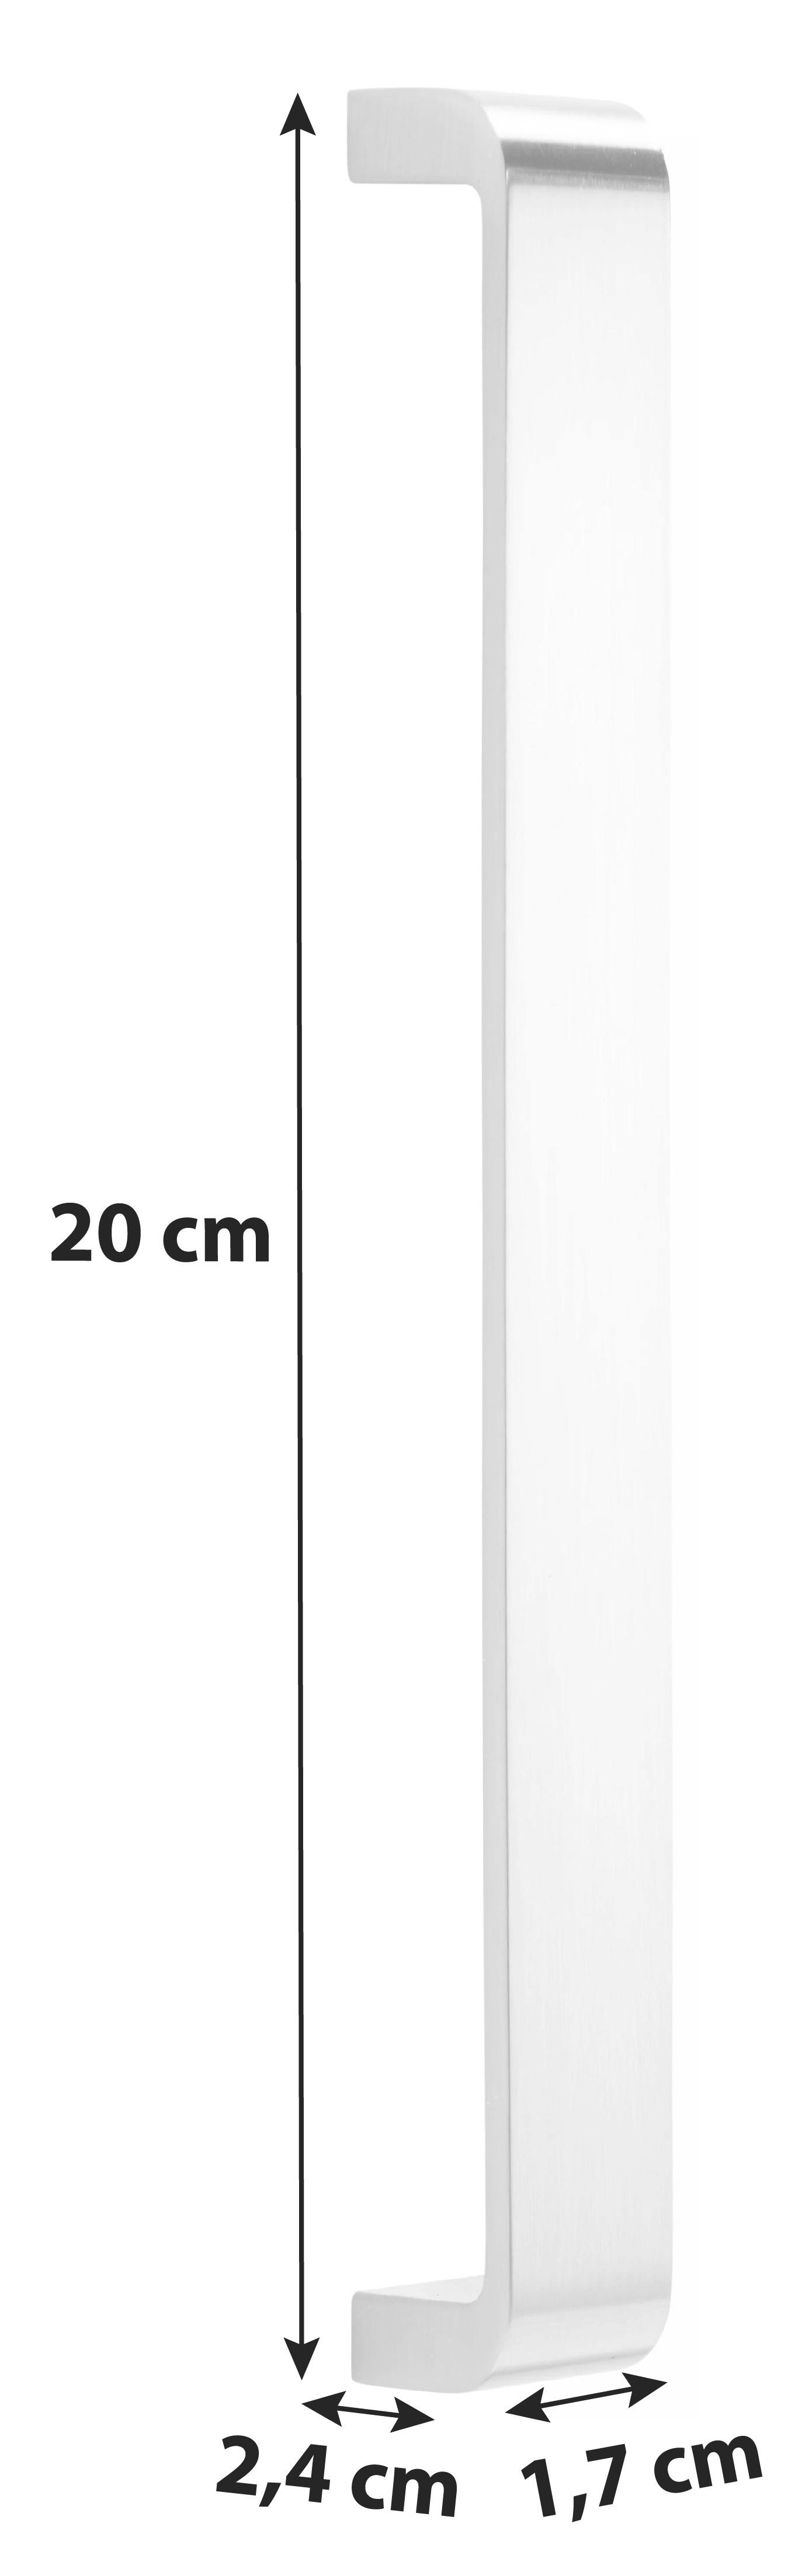 Nábytková Úchytka Unit - biela, Moderný, kov (20/2,4/1,7cm) - Ondega